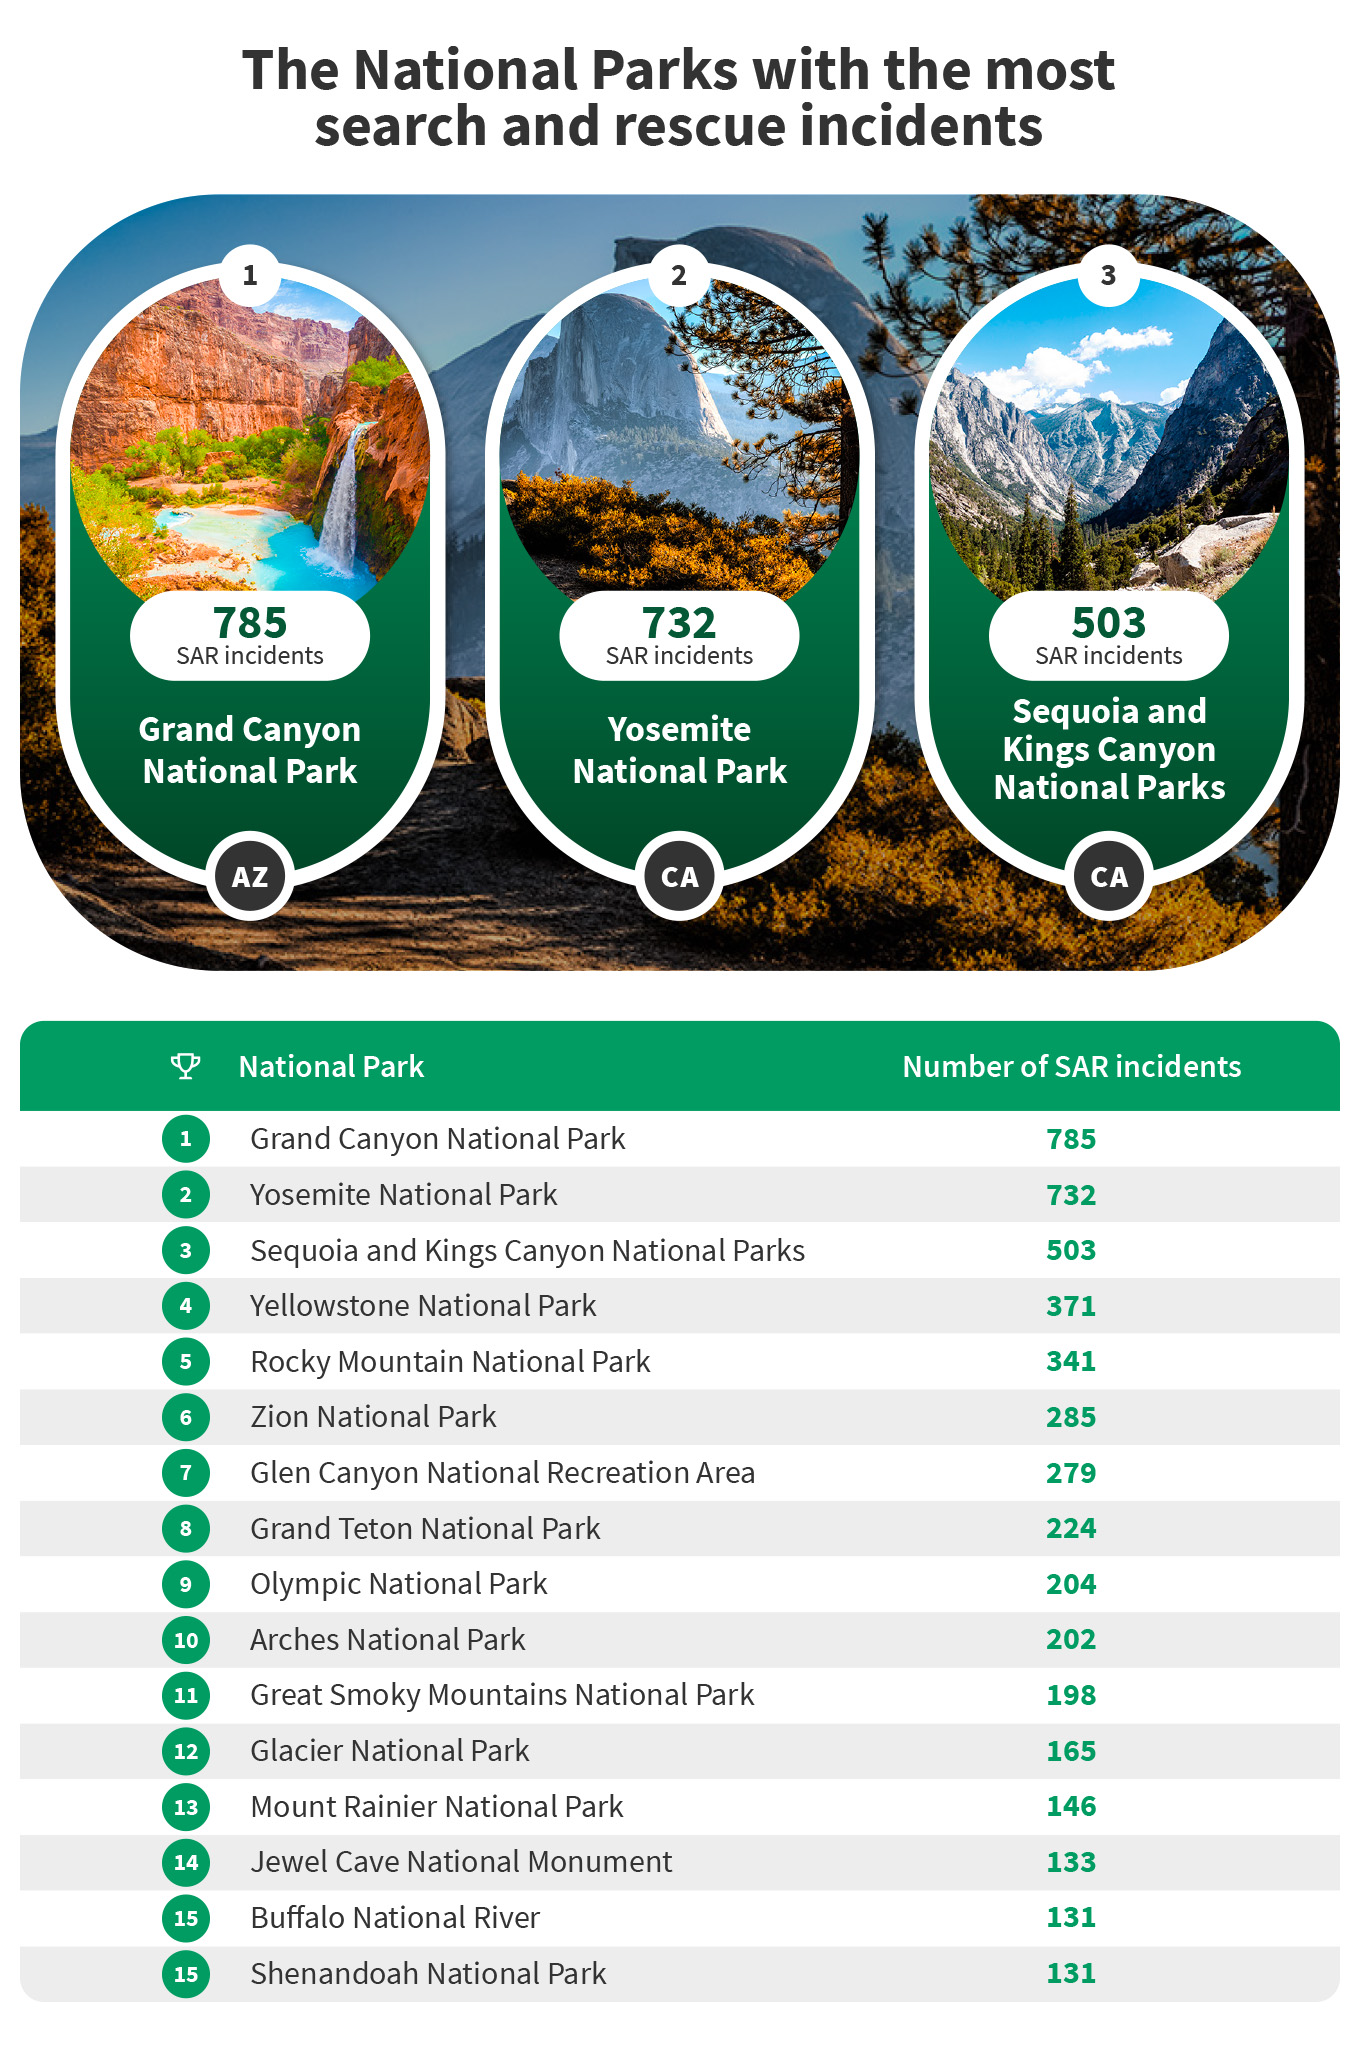 Parques nacionales de EE. UU. Con los más altos incidentes de búsqueda y rescate - 79